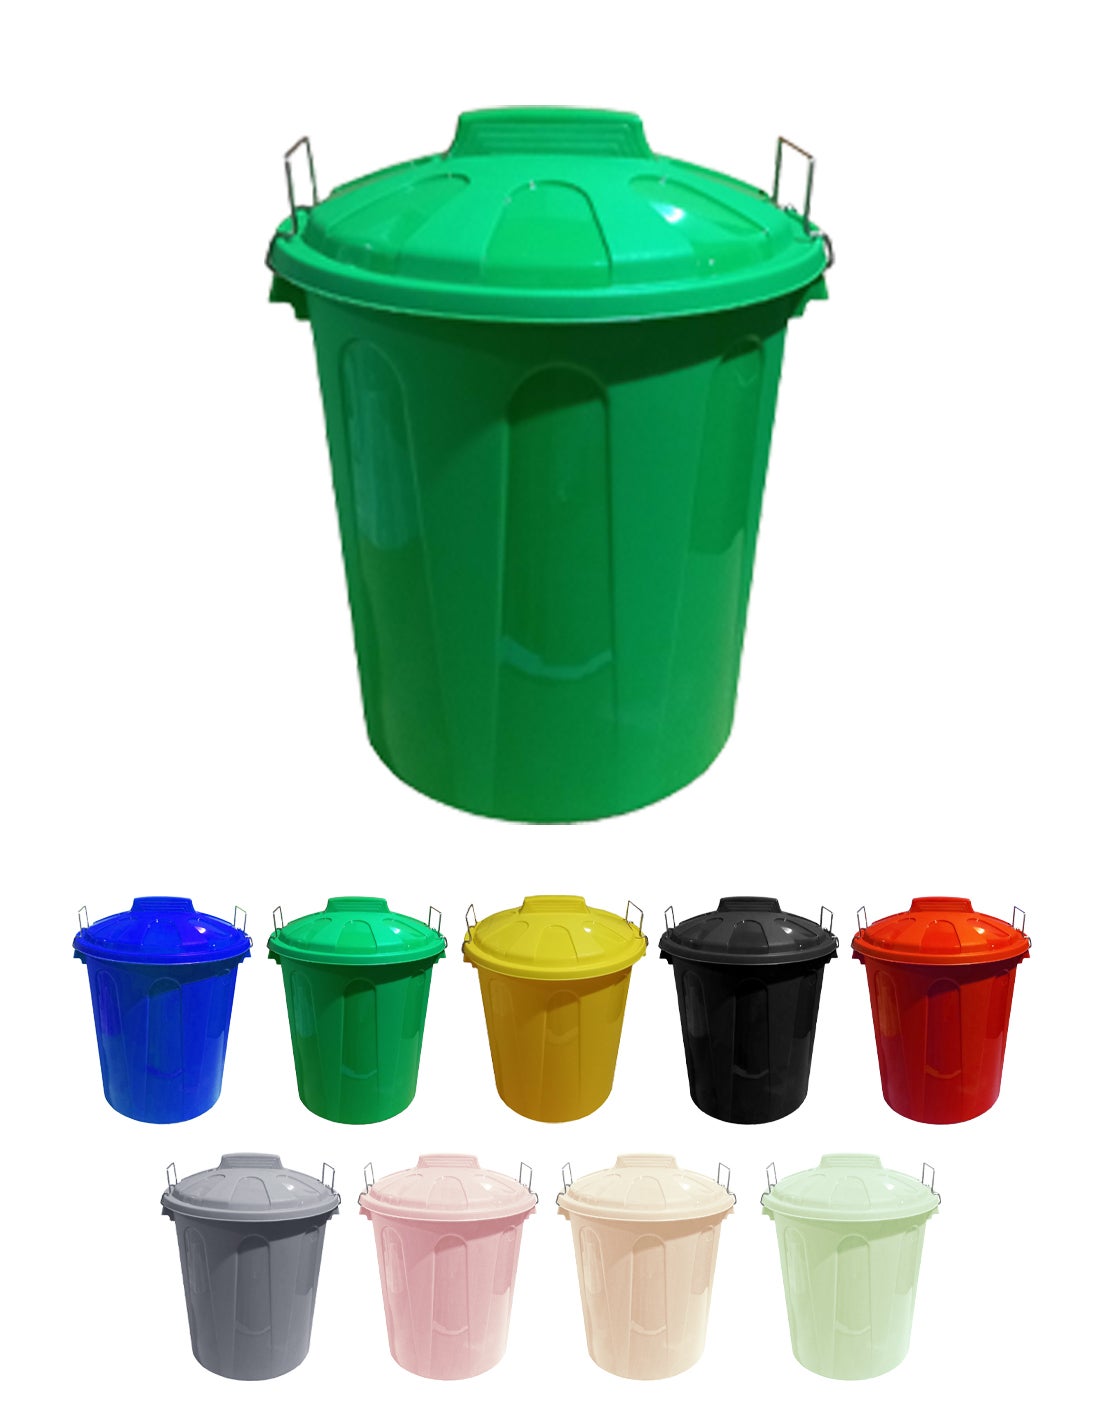 Cubo de basura 50 litros con 3 compartimentos para reciclaje color verde